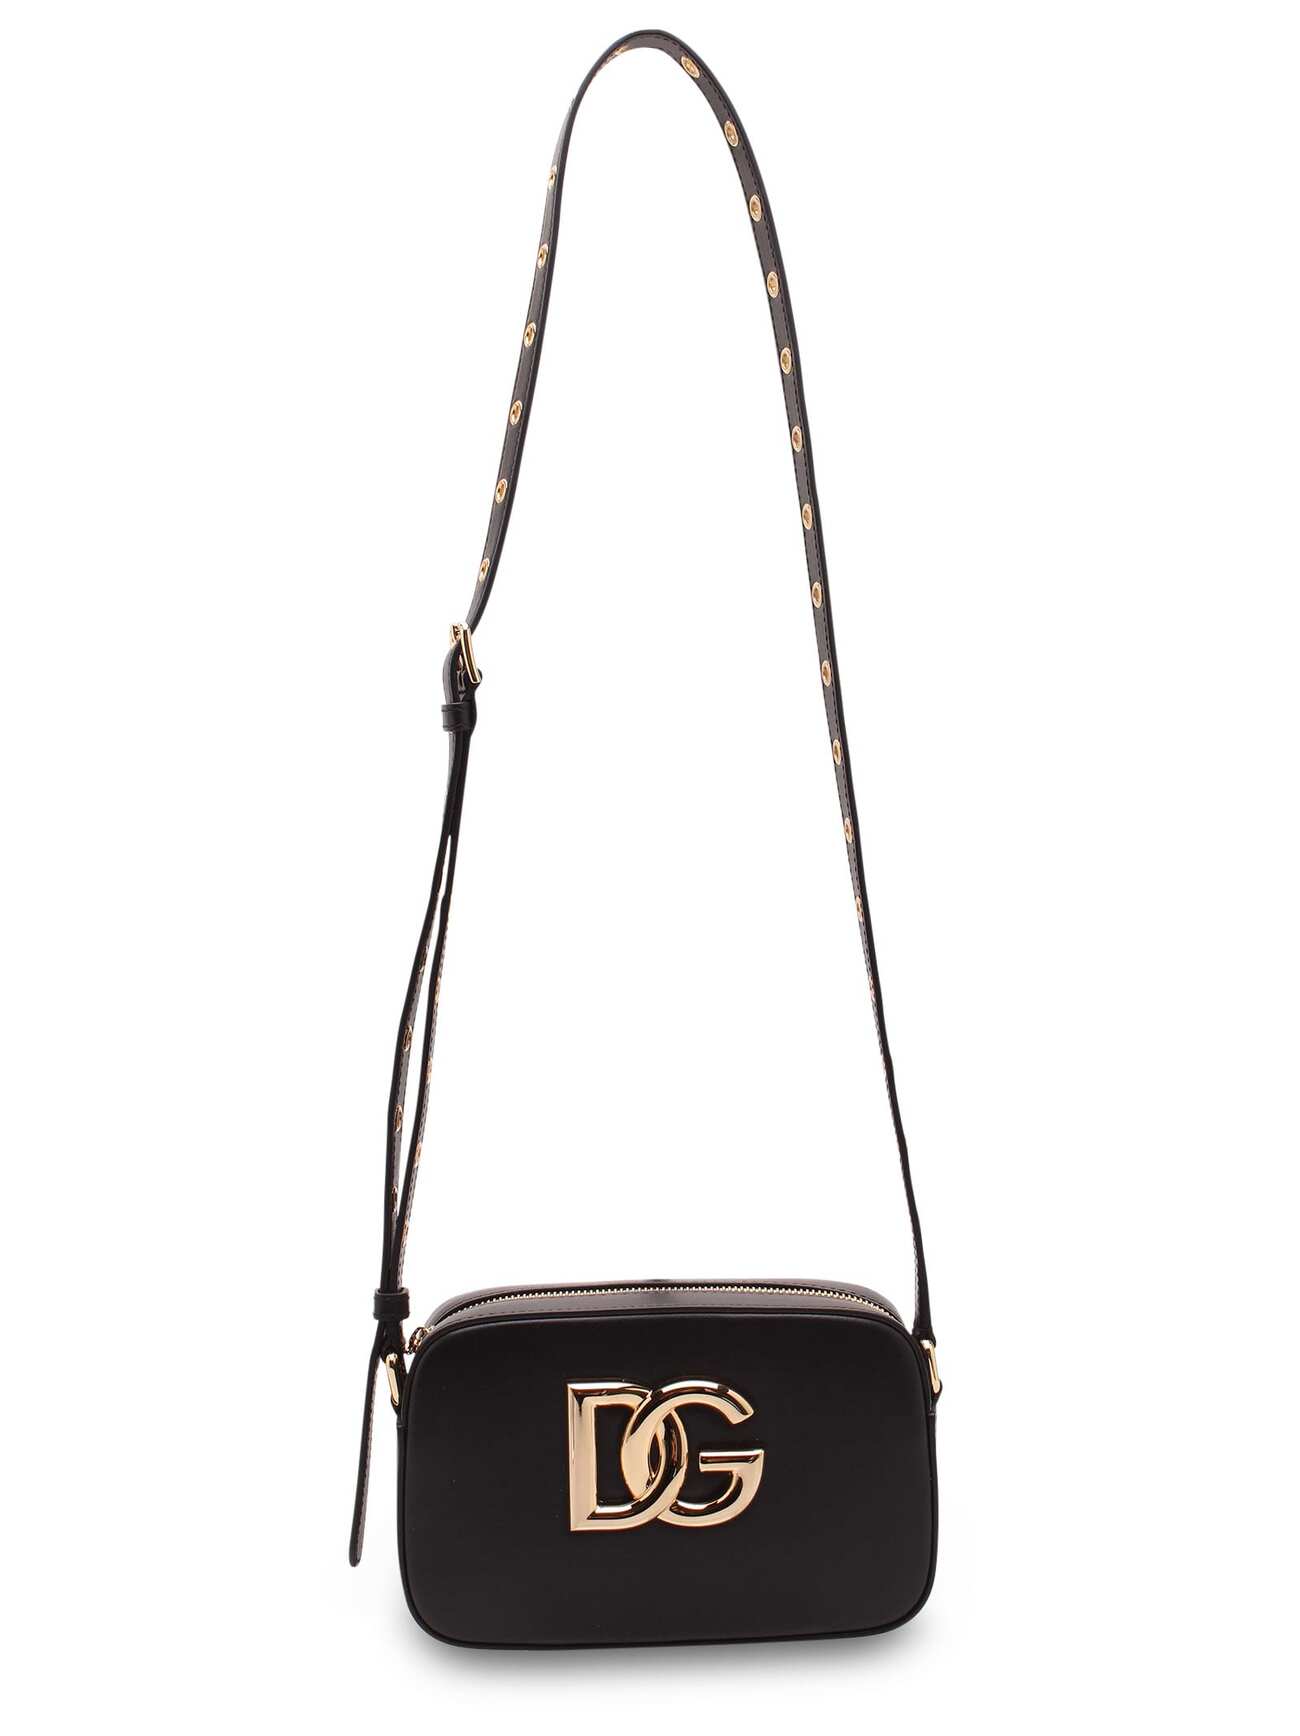 Dolce & Gabbana 3.5 Leather Shoulder Bag in black